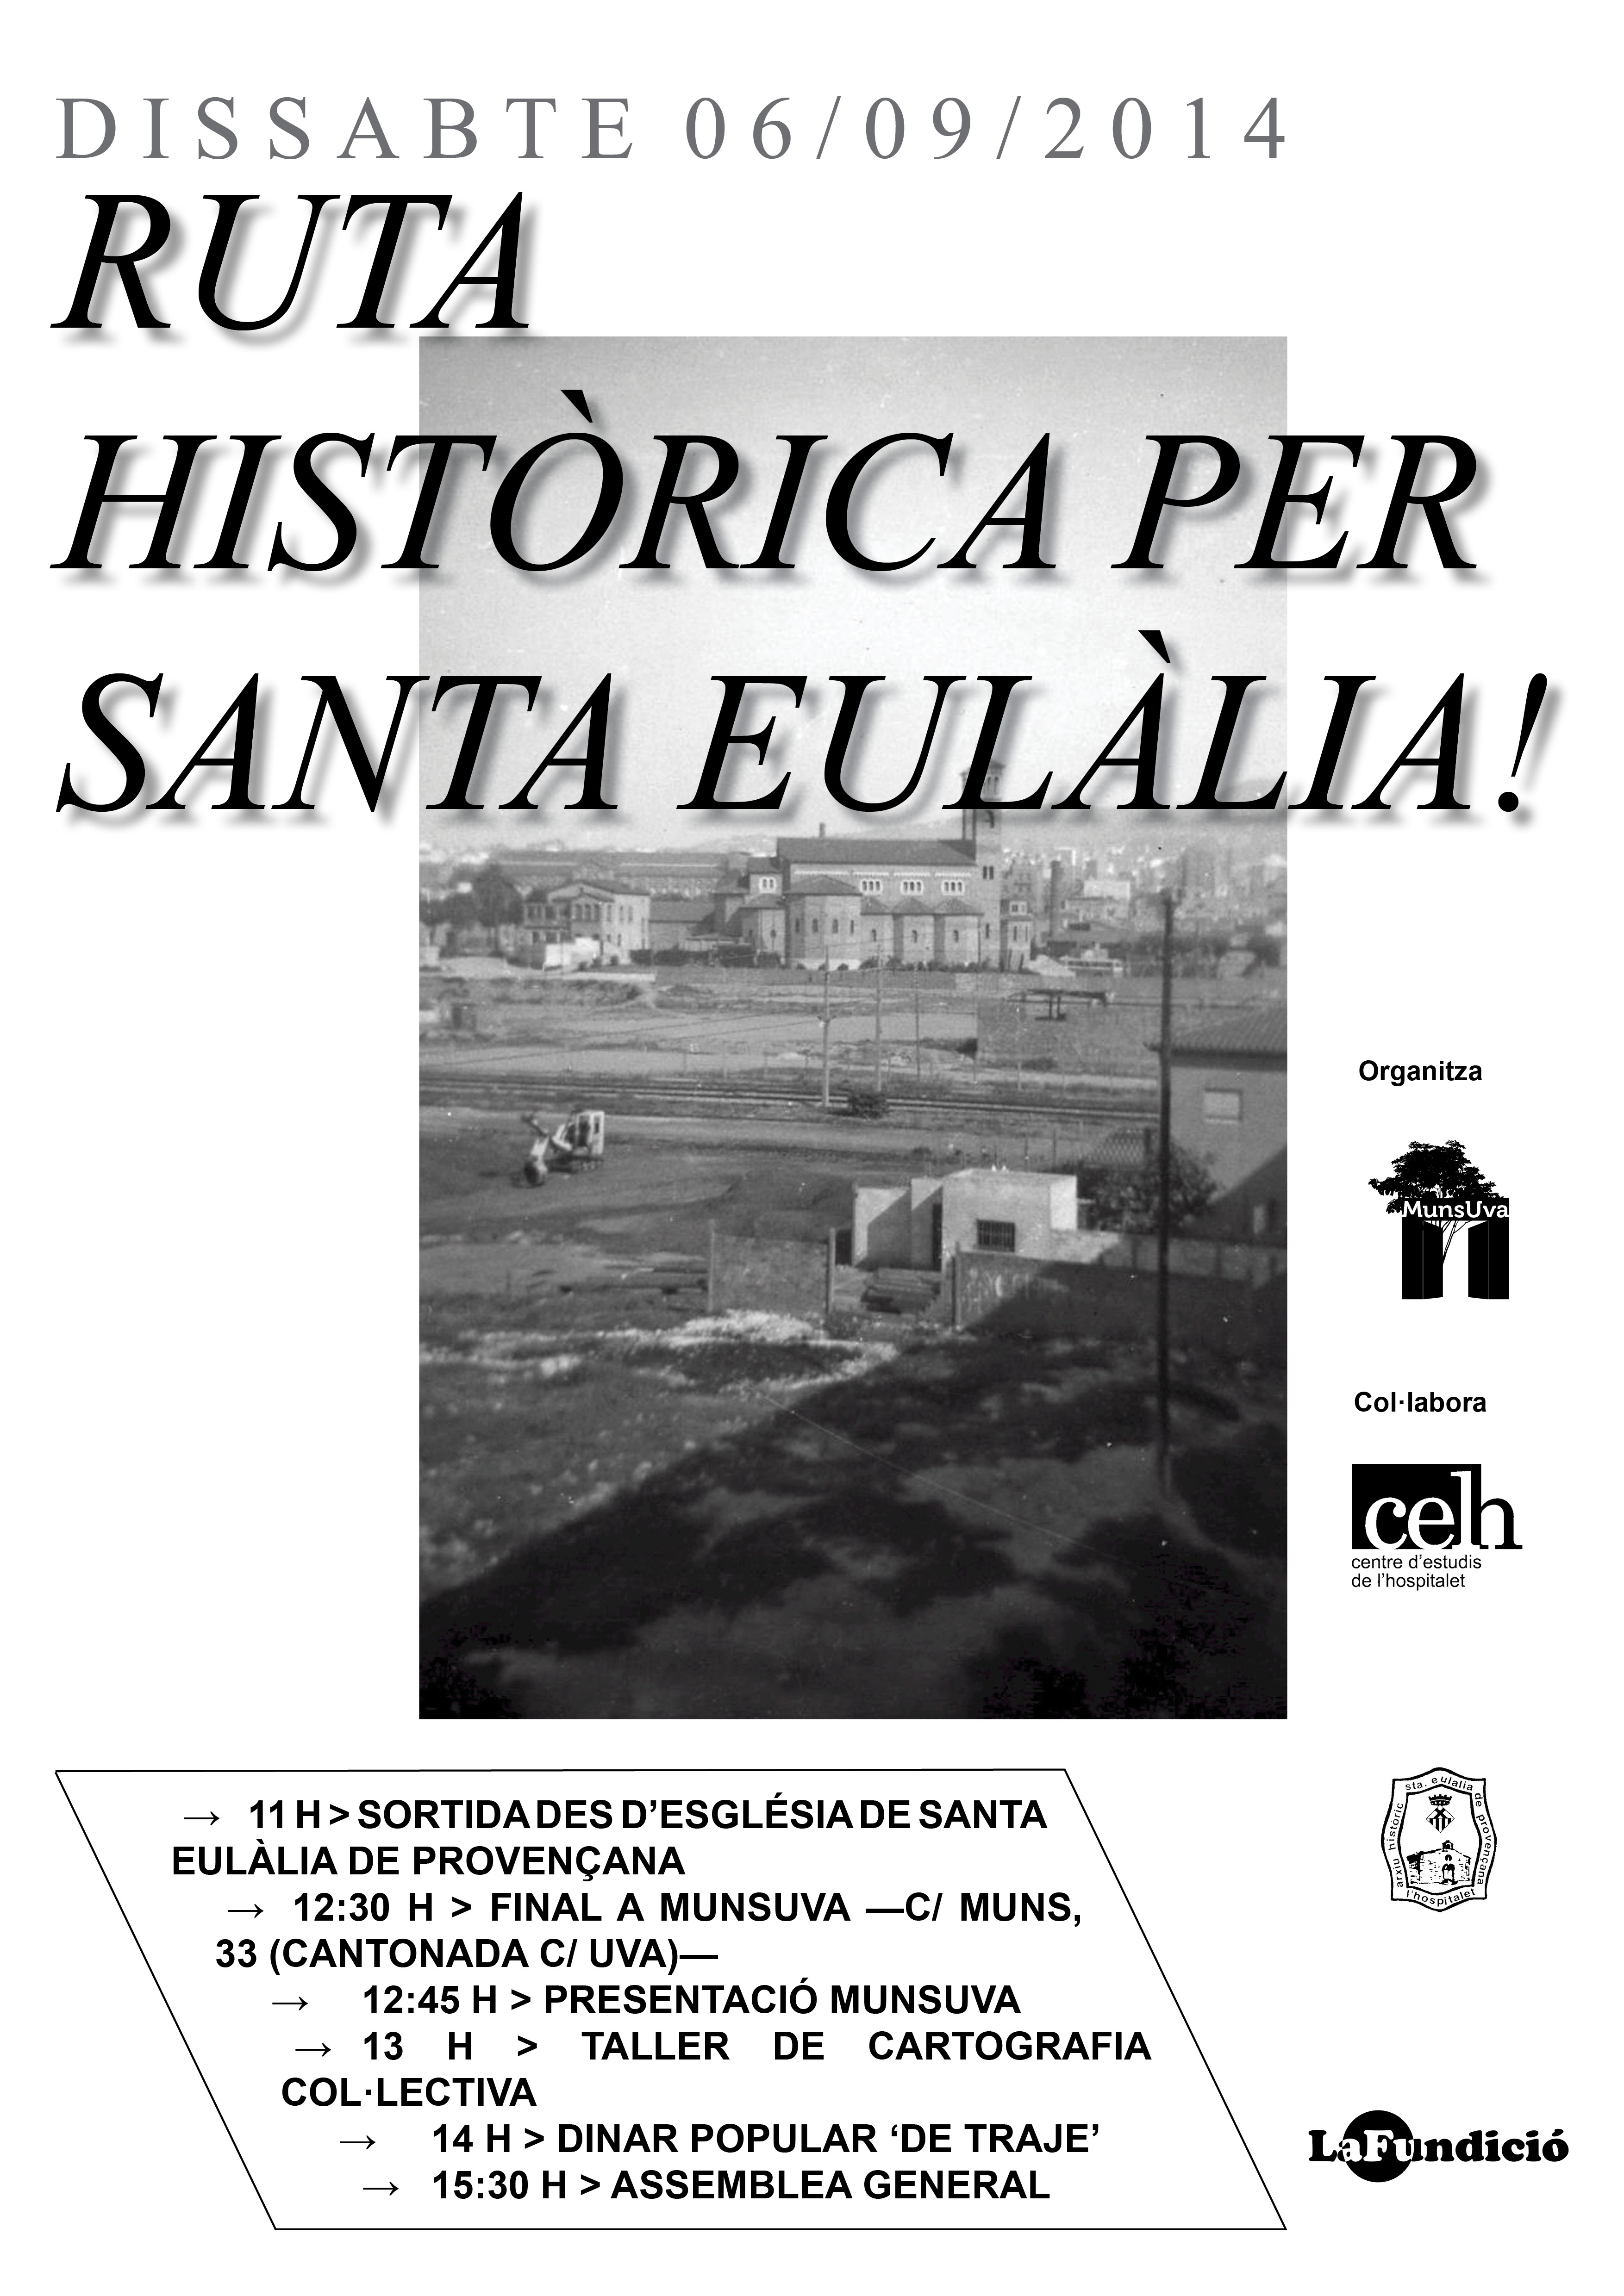 Grupo de trabajadoras de la fábrica textil Can Trinxet, situada en Santa Eulàlia hasta 1981. Autor desconocido. Publicada por Pepi Villar Villar en L'Hospitalet de Llobregat. Imatges retrospectives d'una ciutat.